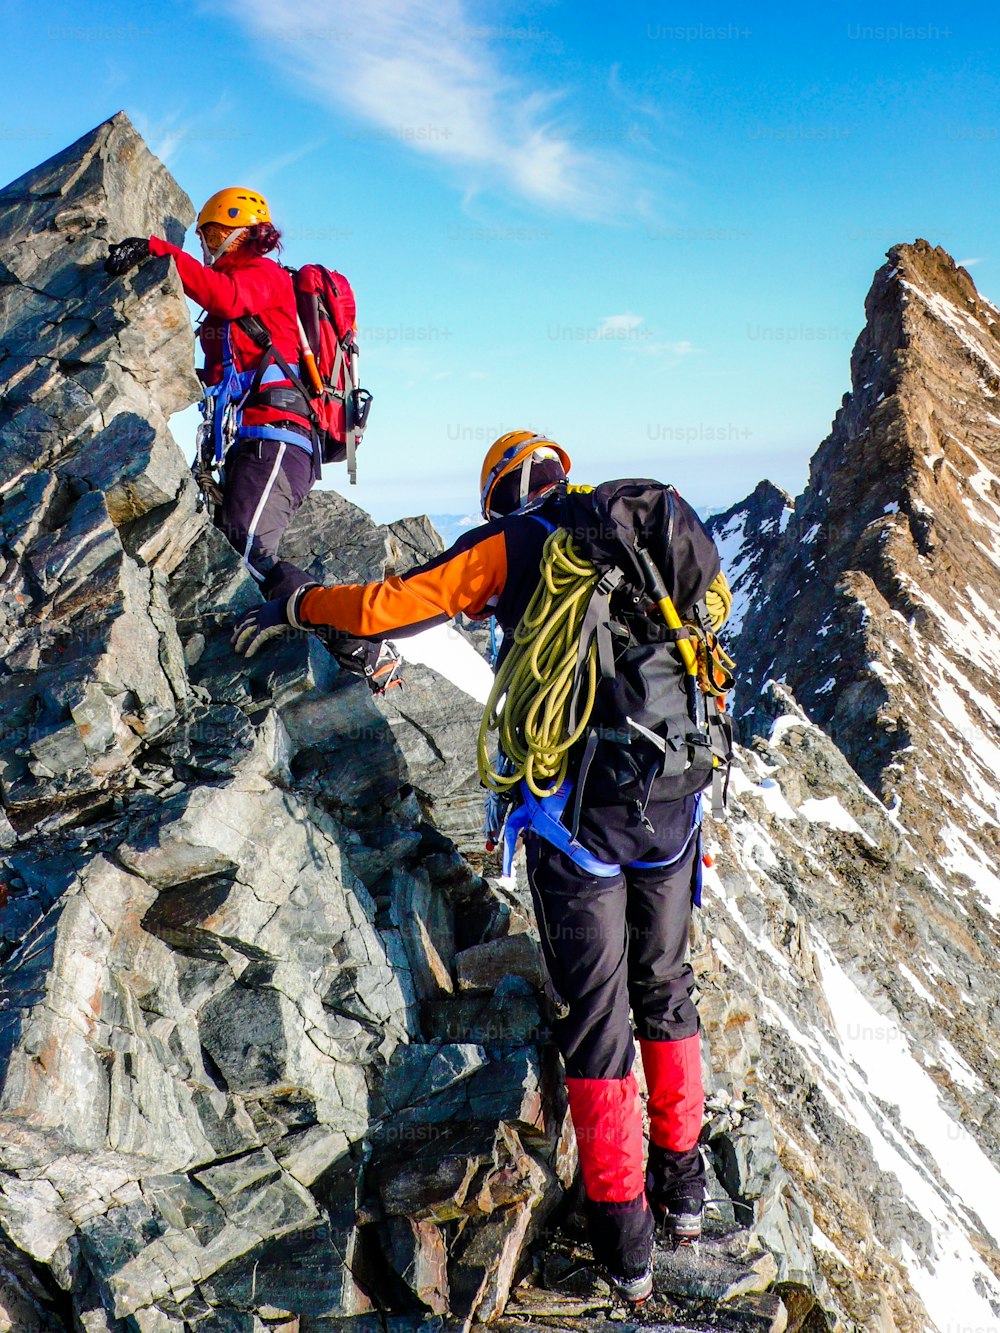 スイスアルプスのツェルマット近郊の高山の山頂に向かう途中の露出した岩山頂の尾根を登る男女の登山者